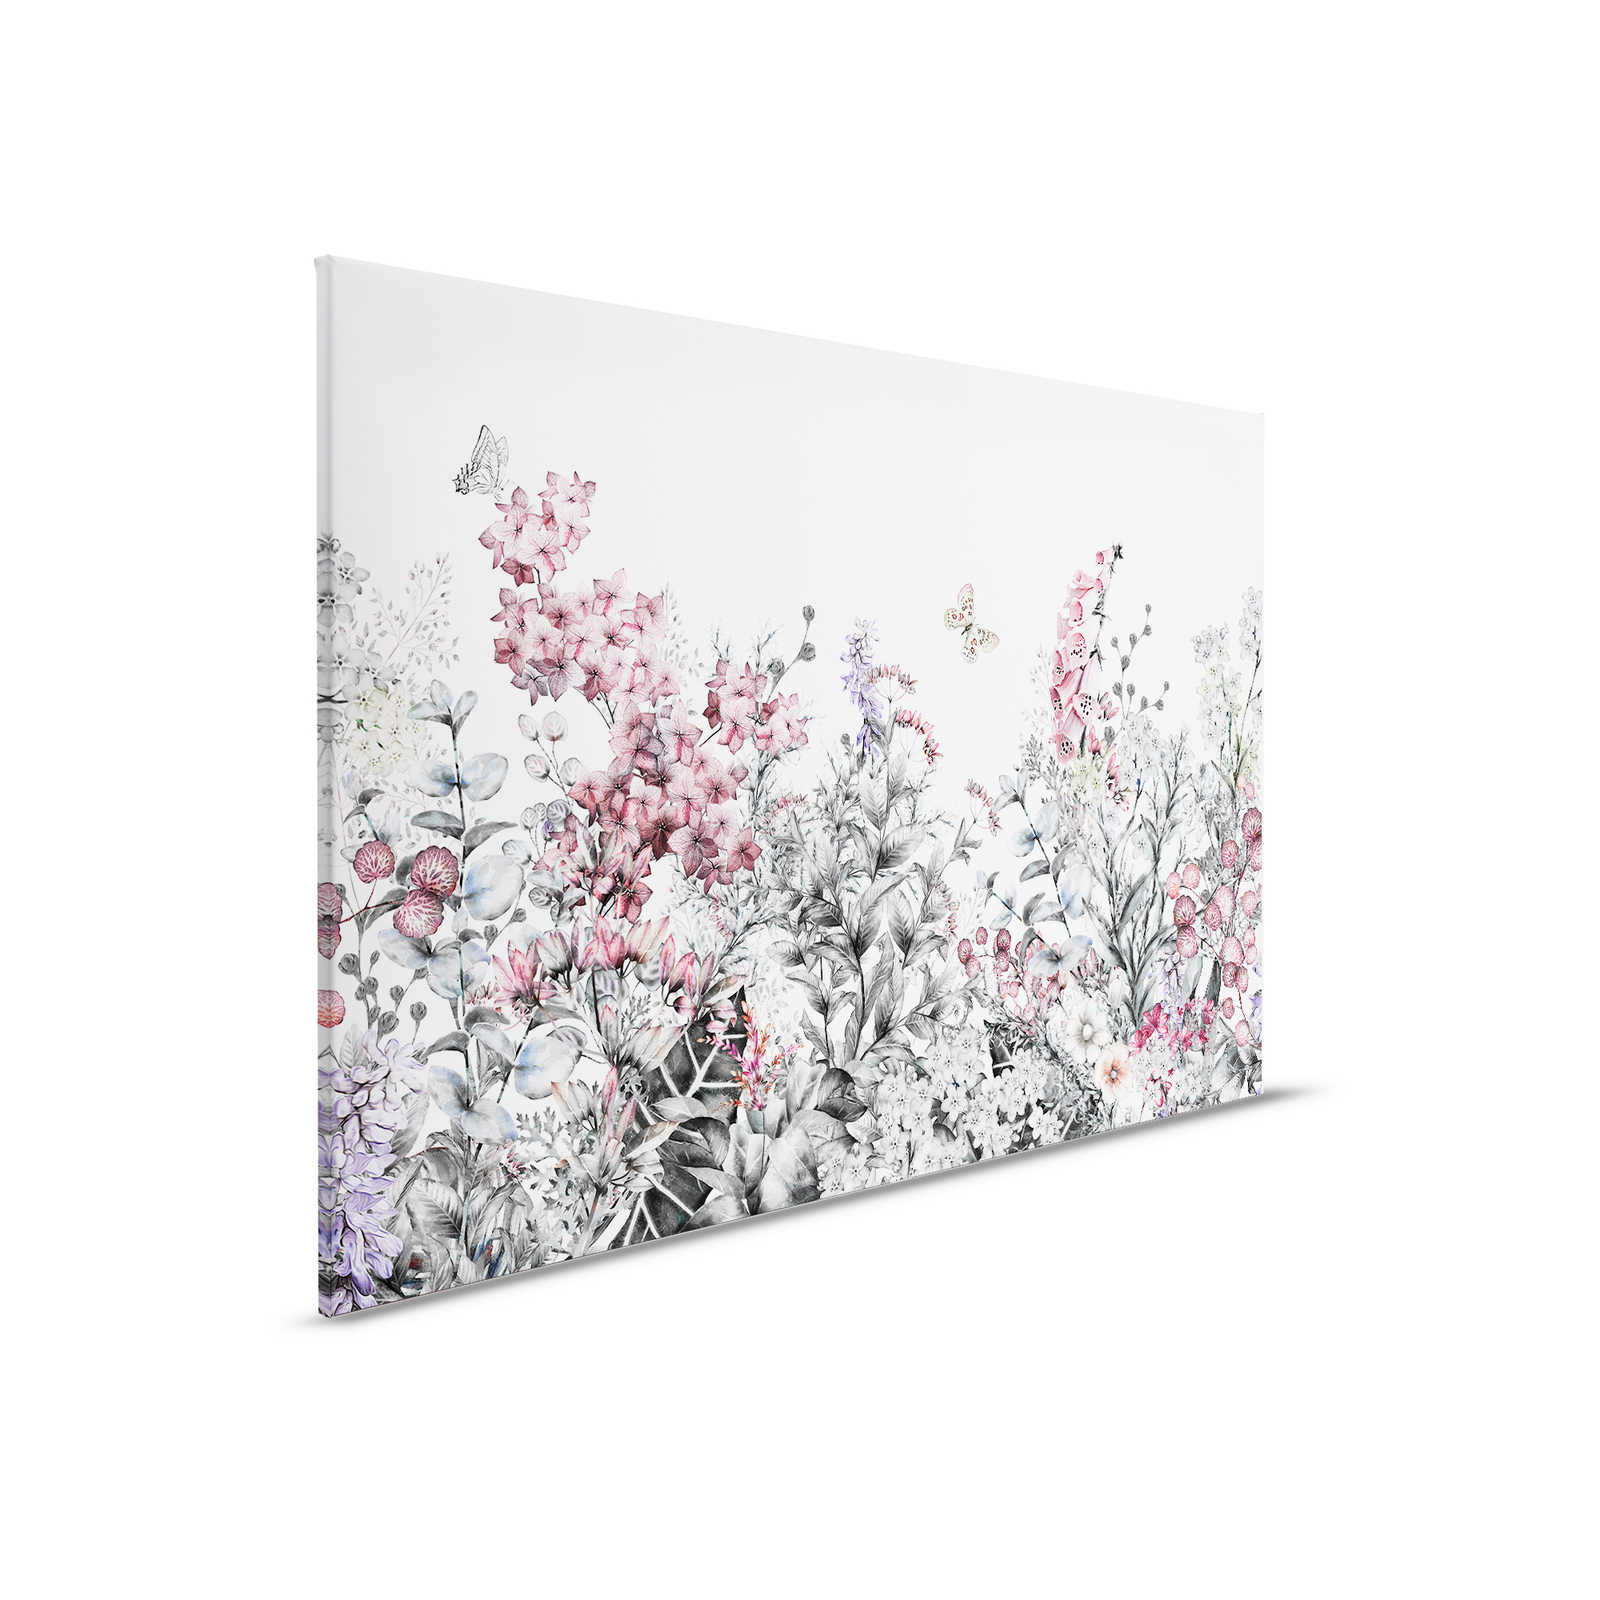         Leinwand mit Schlicht gemalten Blumen – 0,90 m x 0,60 m
    